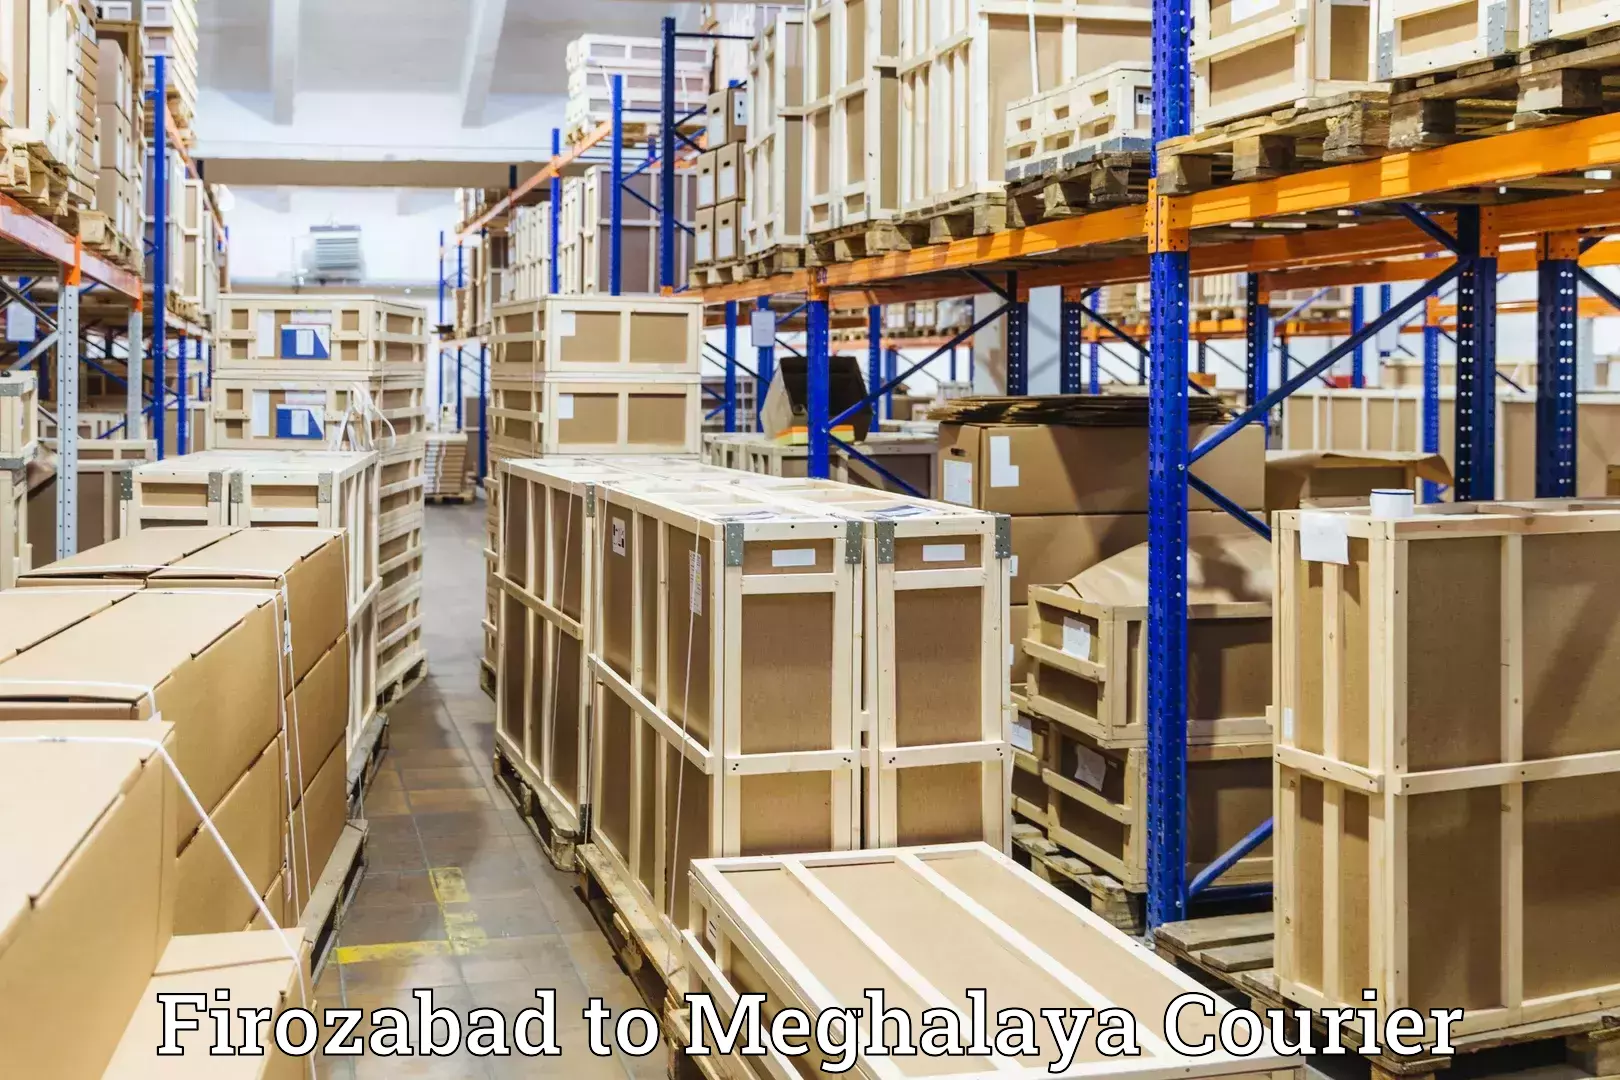 Baggage shipping service Firozabad to Williamnagar